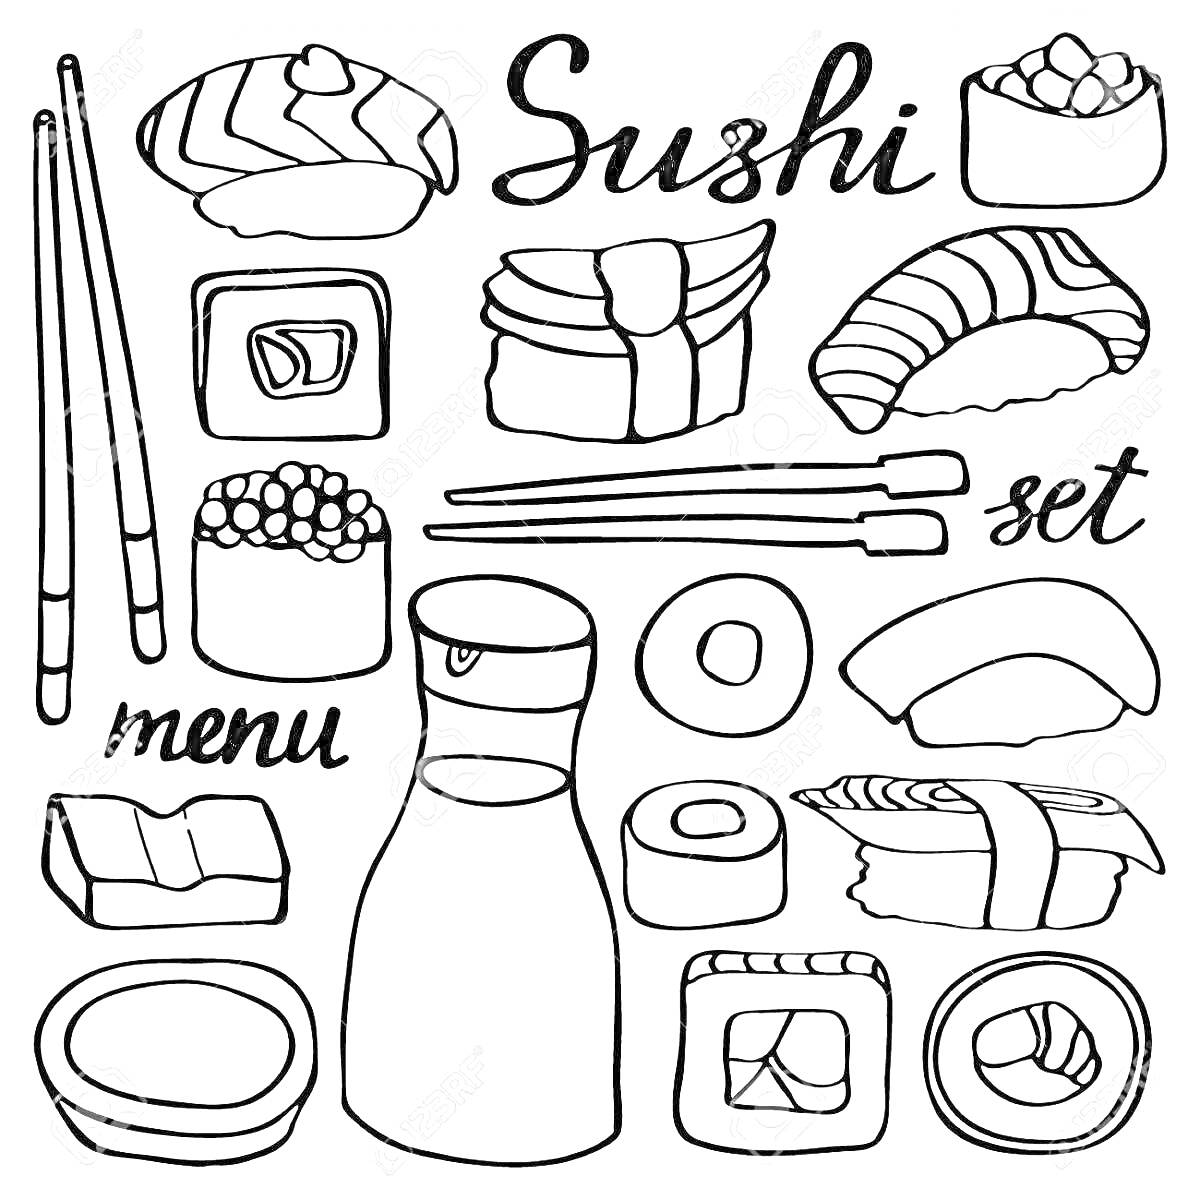 Набор суши, палочки для еды, соусник, разные виды роллов и суши, соусник, доска, графин для соевого соуса, миска